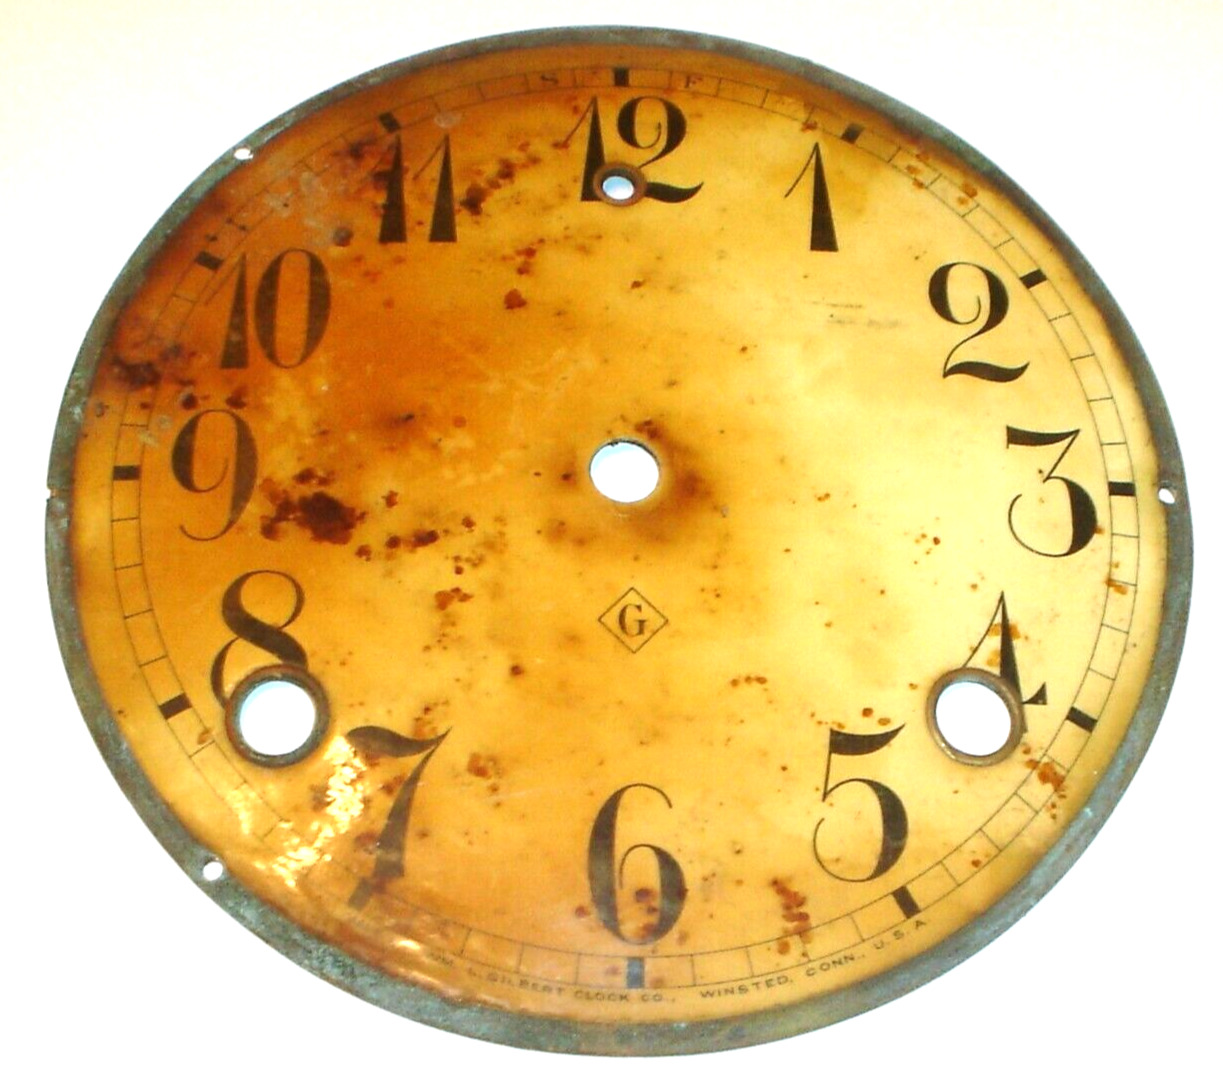 Antique Wm. L. Gilbert Mantel Clock Dial / Face Pan Part (No Glass Door) D6